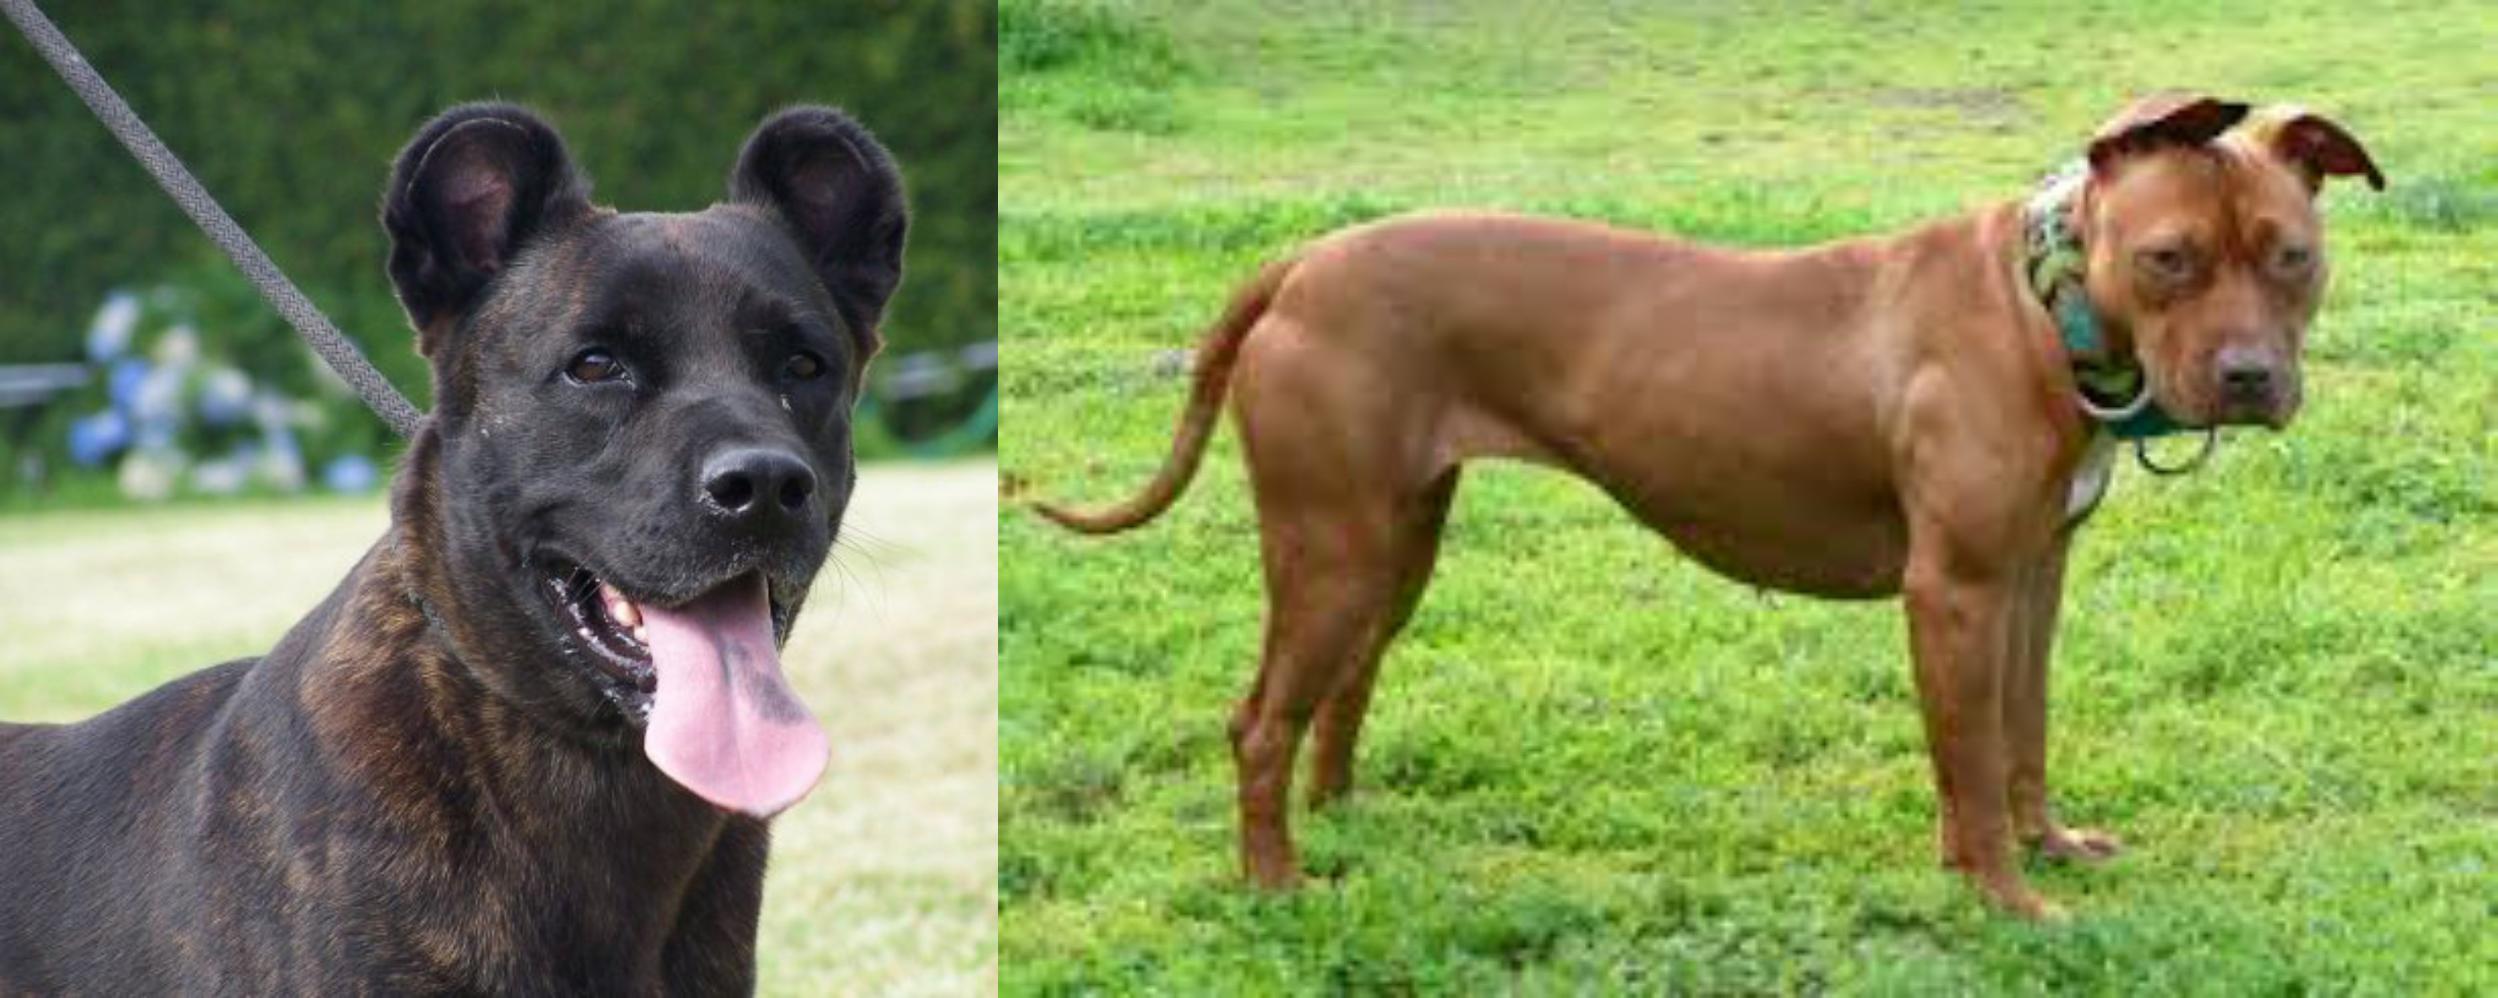 Cao Fila De Sao Miguel Vs American Pit Bull Terrier Breed Comparison